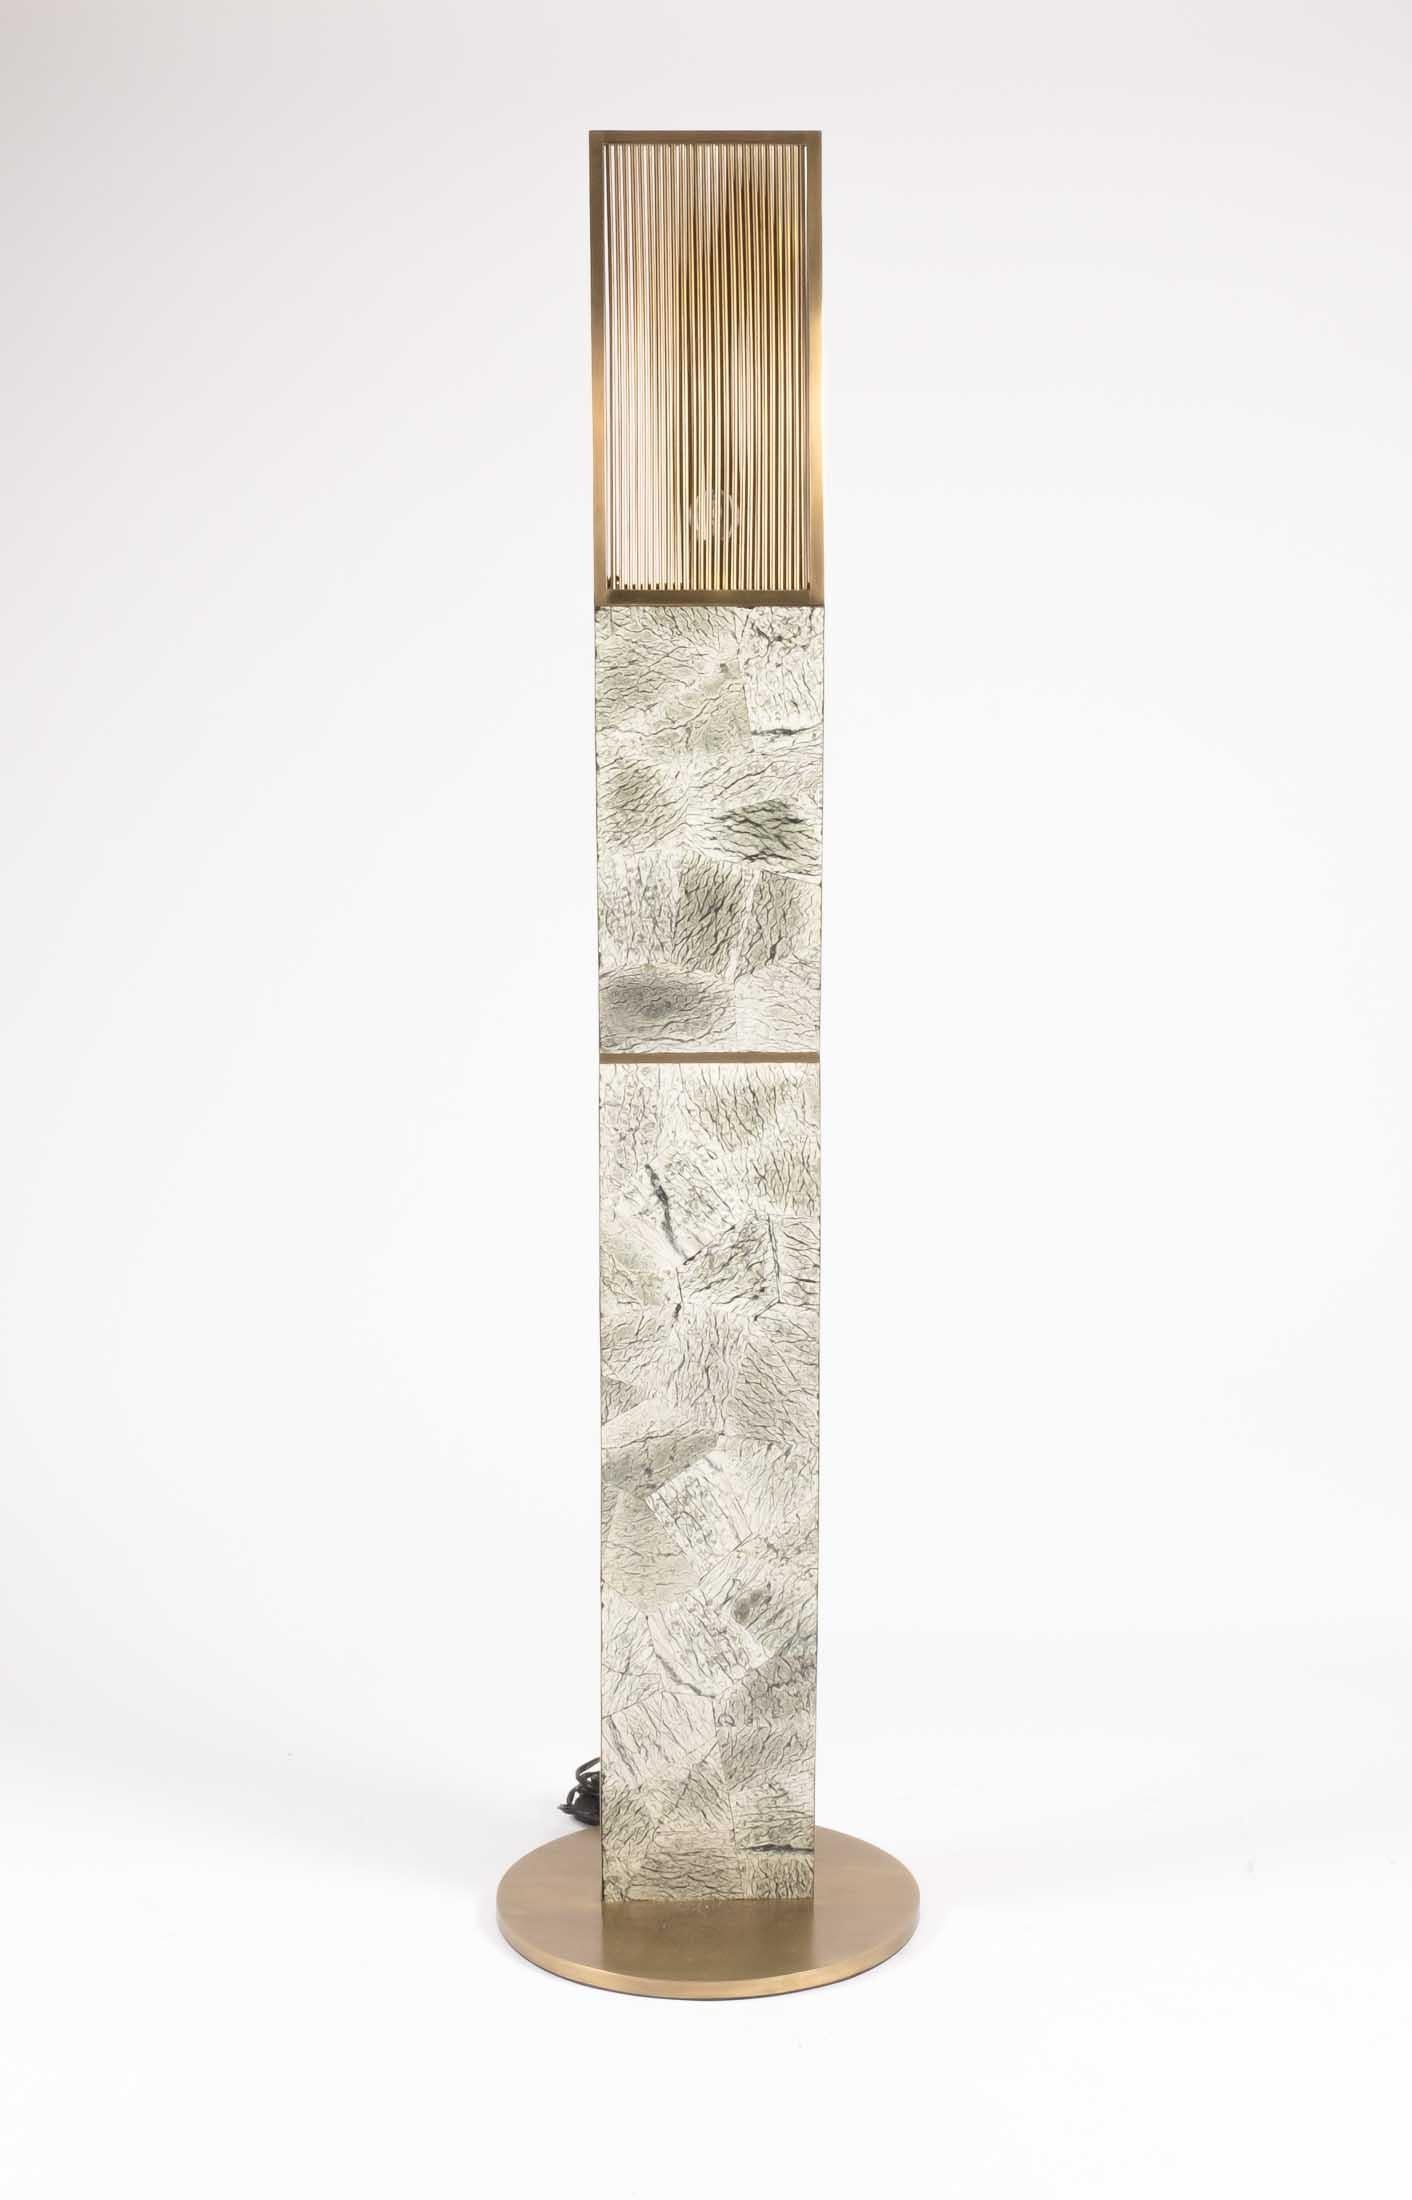 Die große Propeller-Stehleuchte Kifu Paris aus Baguio-Stein ist ein skulpturales Beleuchtungsobjekt und in zwei weiteren Größen erhältlich, die separat verkauft werden (Bilder am Ende der Folie). Die Farben des Baguio-Steins sind in den Tönen Grün,